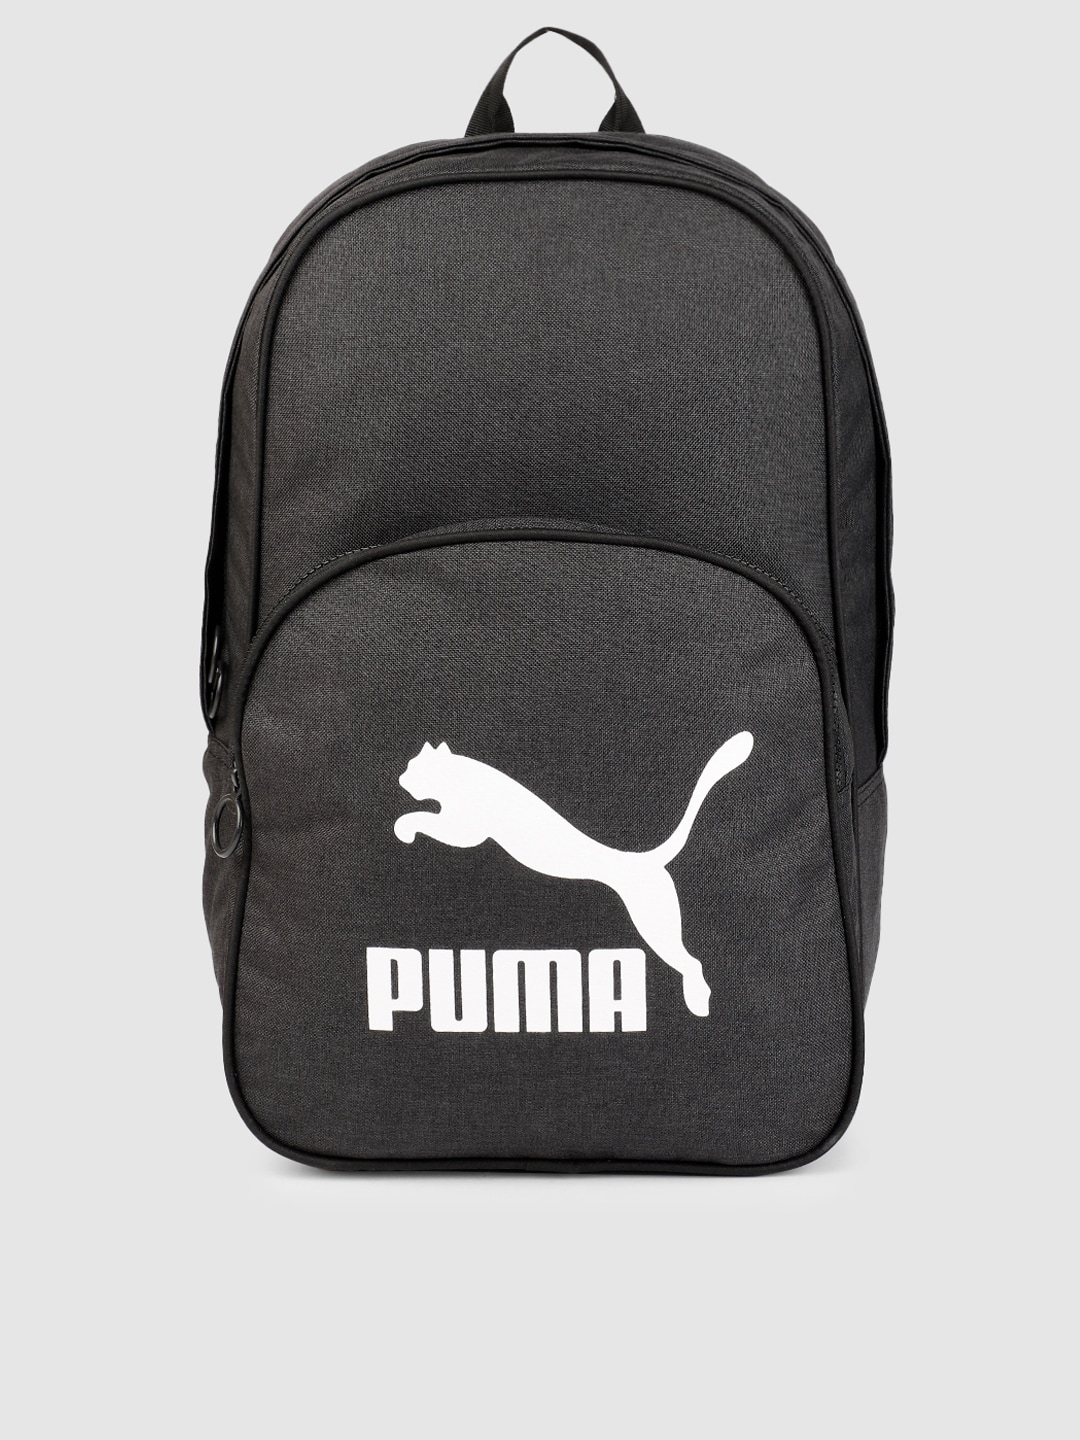 Puma Unisex Black Originals Retro woven Brand Logo Backpack Price in India